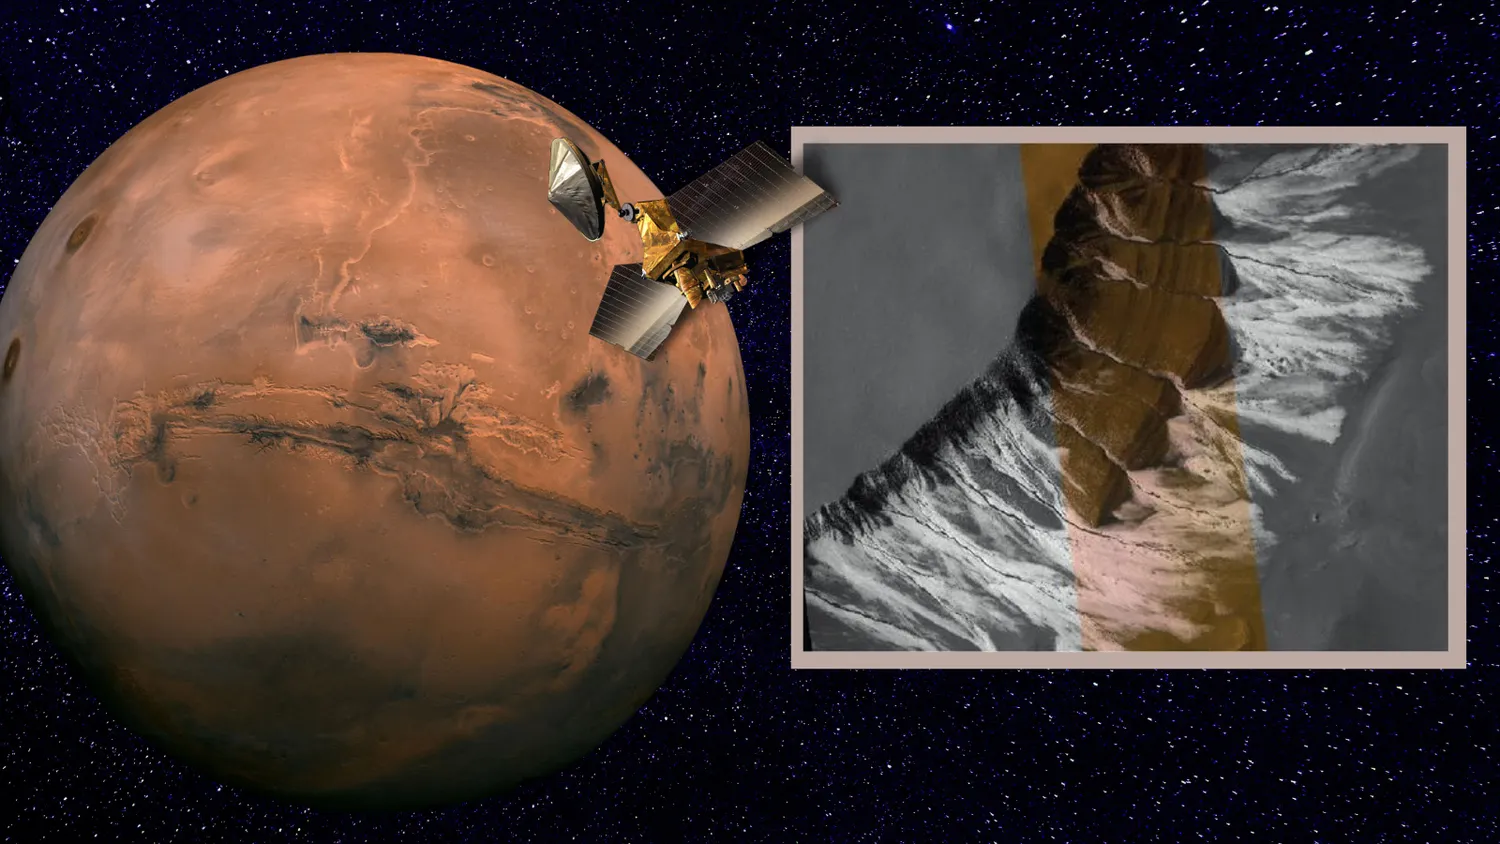 Links eine Illustration eines Raumschiffs in der Umlaufbahn des Mars. Rechts ein Foto einer Raumsonde von eisigen Rinnen auf dem Mars.